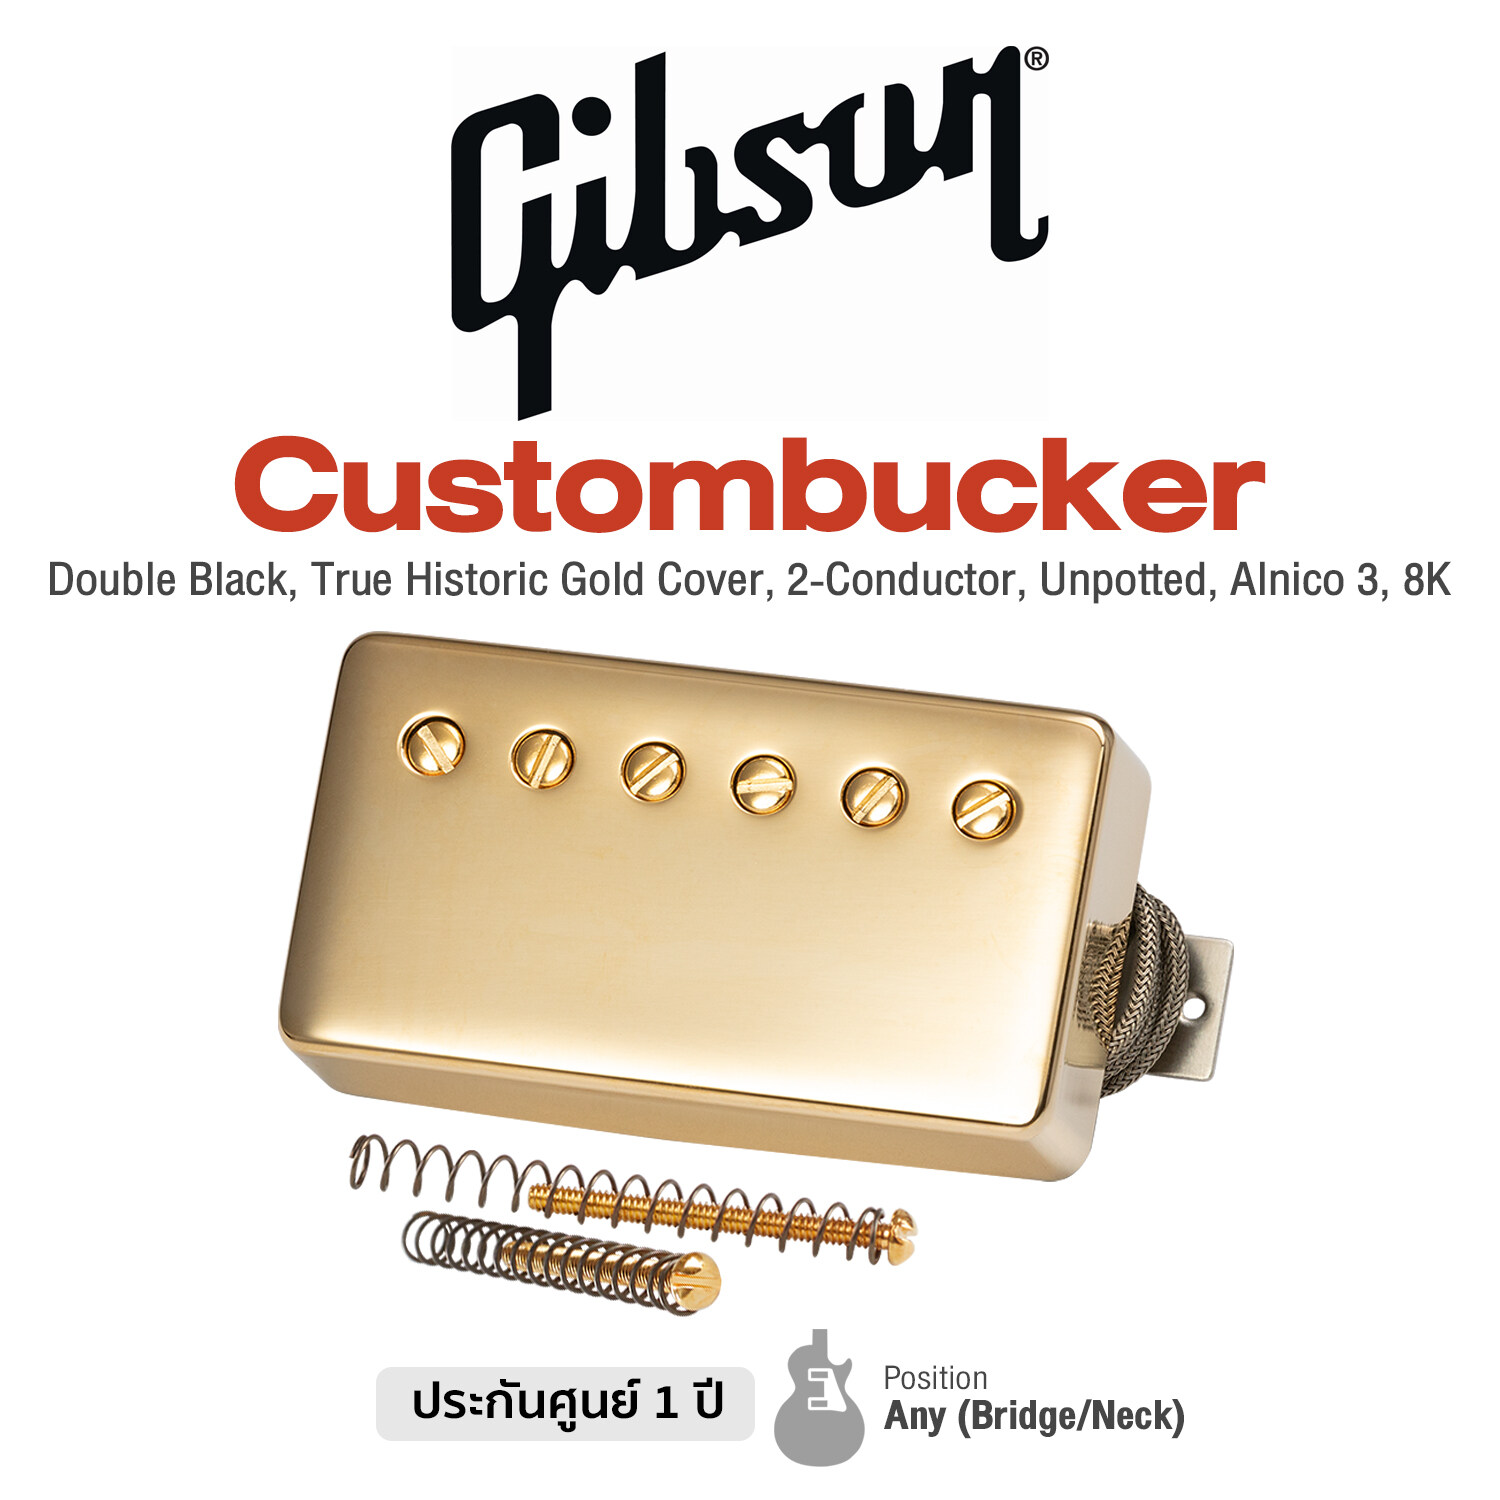 Gibson Custombucker Gold